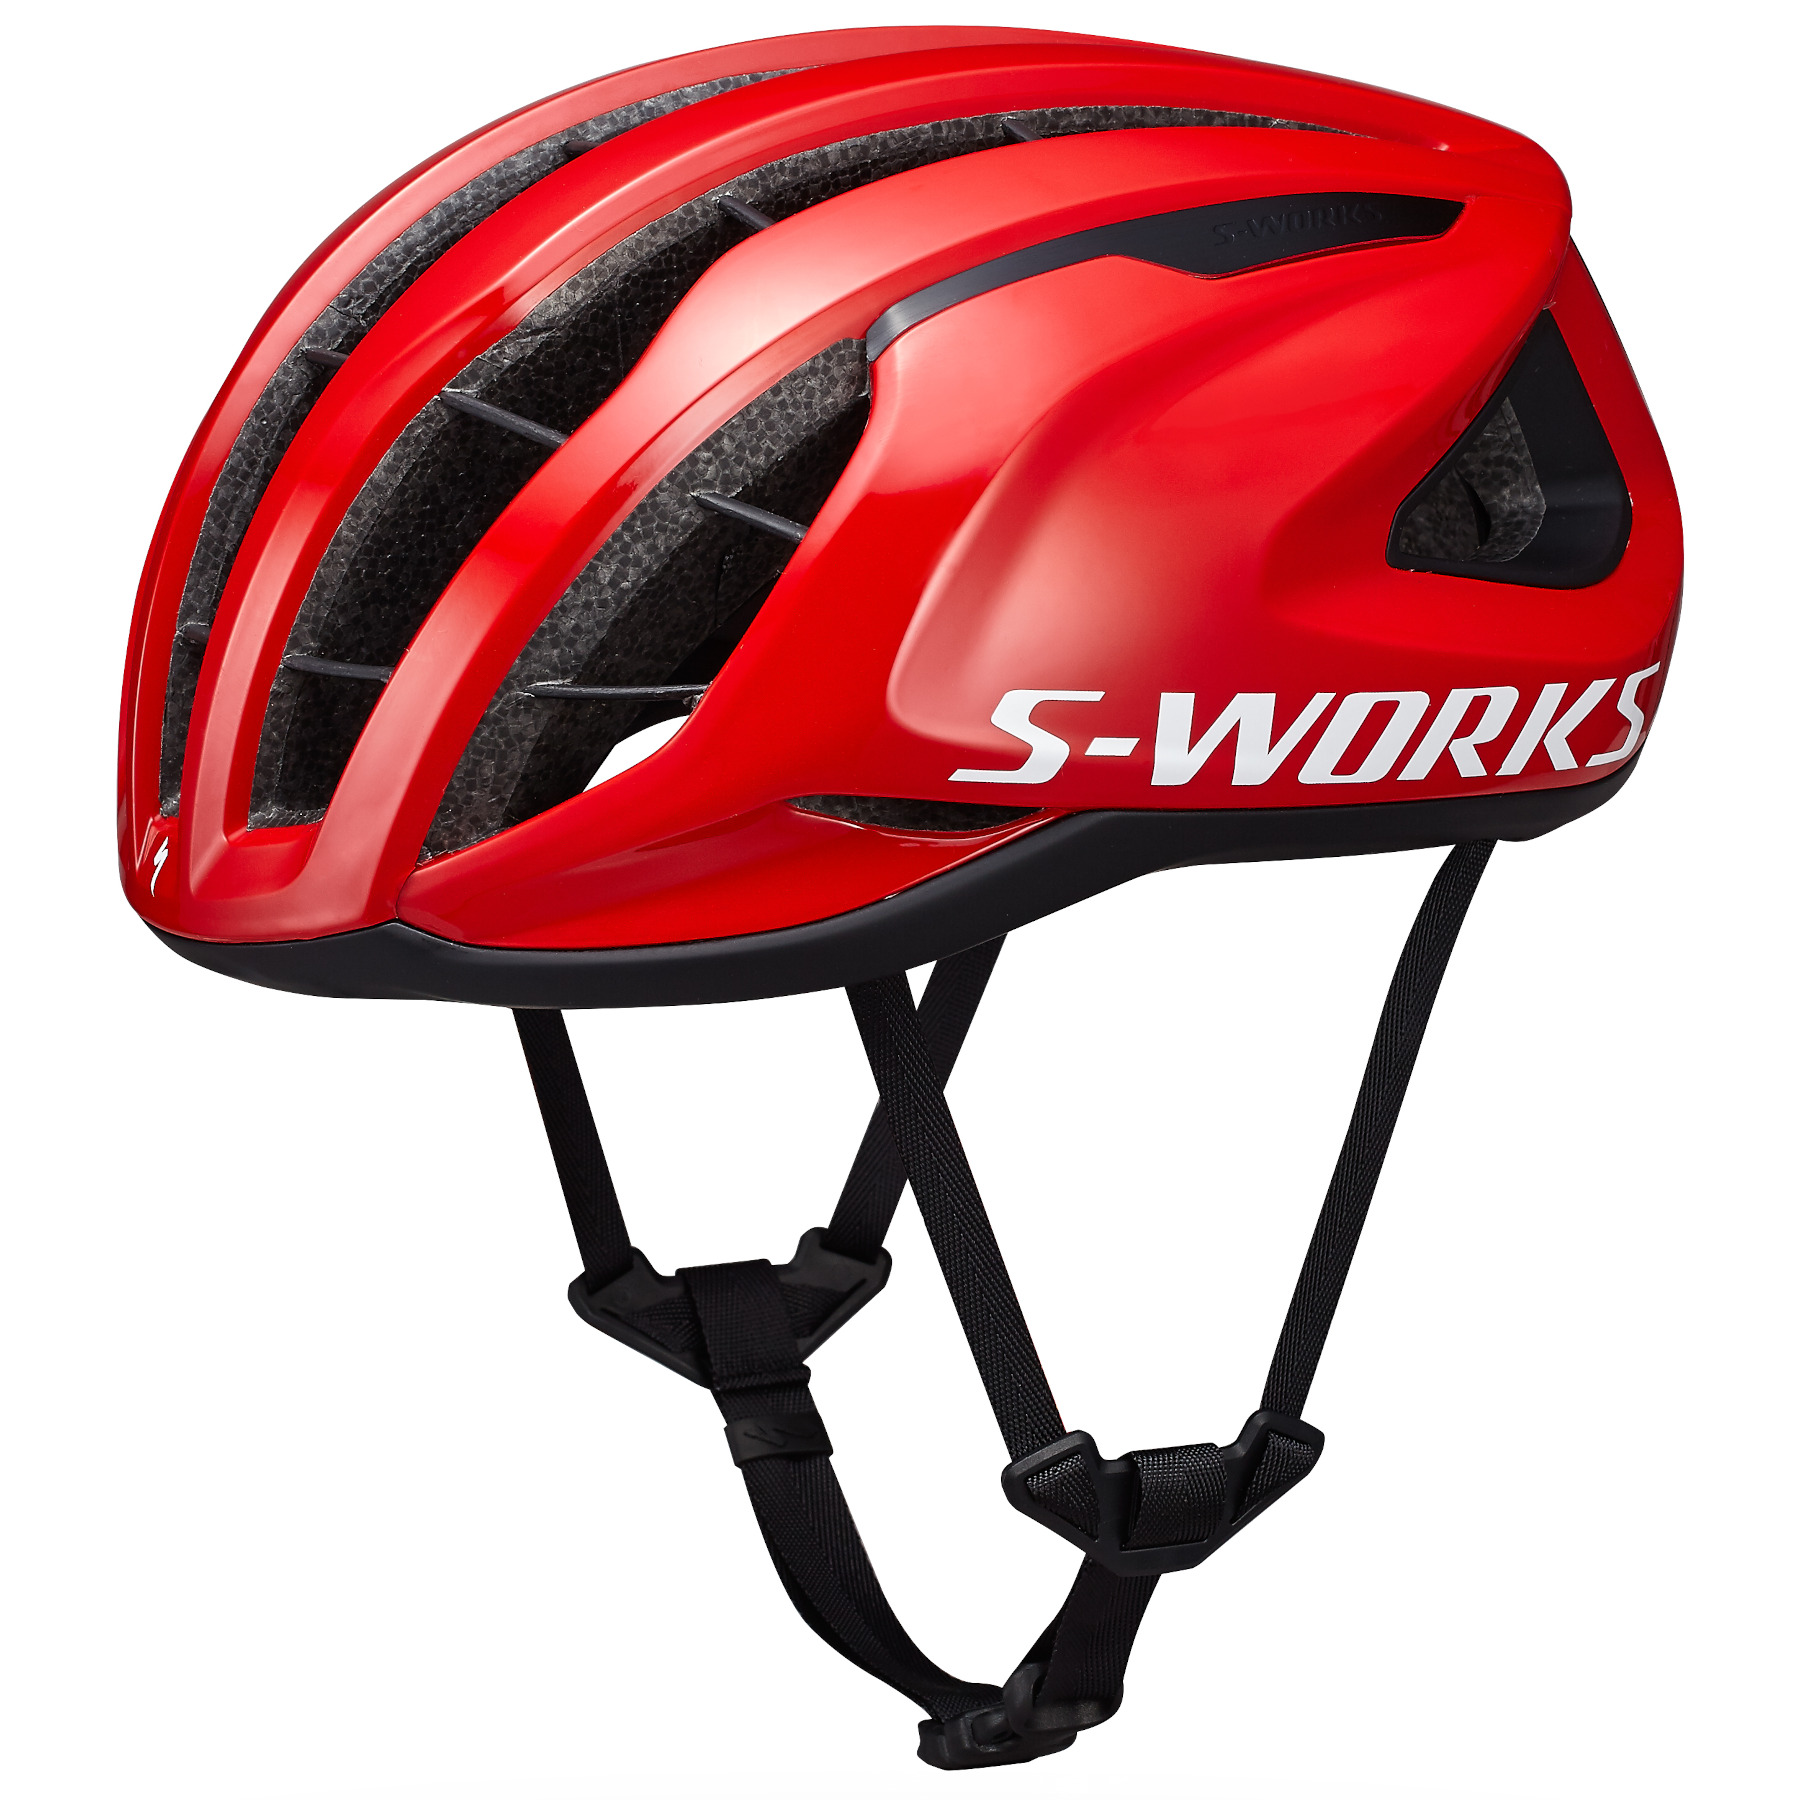 Produktbild von Specialized S-Works Prevail 3 Helm - MIPS Air Node - Vivid Red